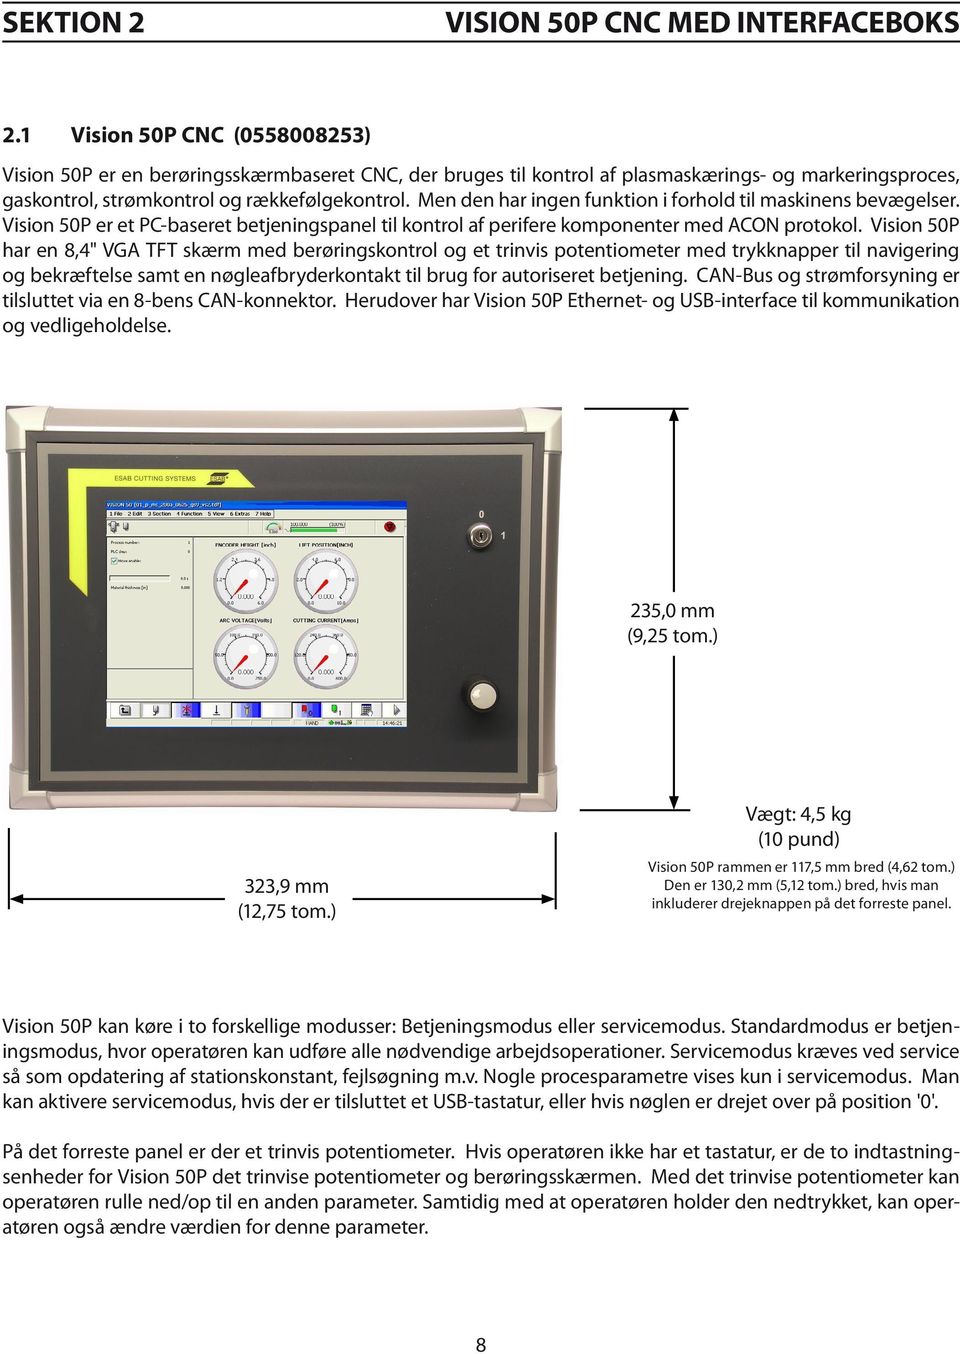 Vision 50P har en 8,4" VGA TFT skærm med berøringskontrol og et trinvis potentiometer med trykknapper til navigering og bekræftelse samt en nøgleafbryderkontakt til brug for autoriseret betjening.